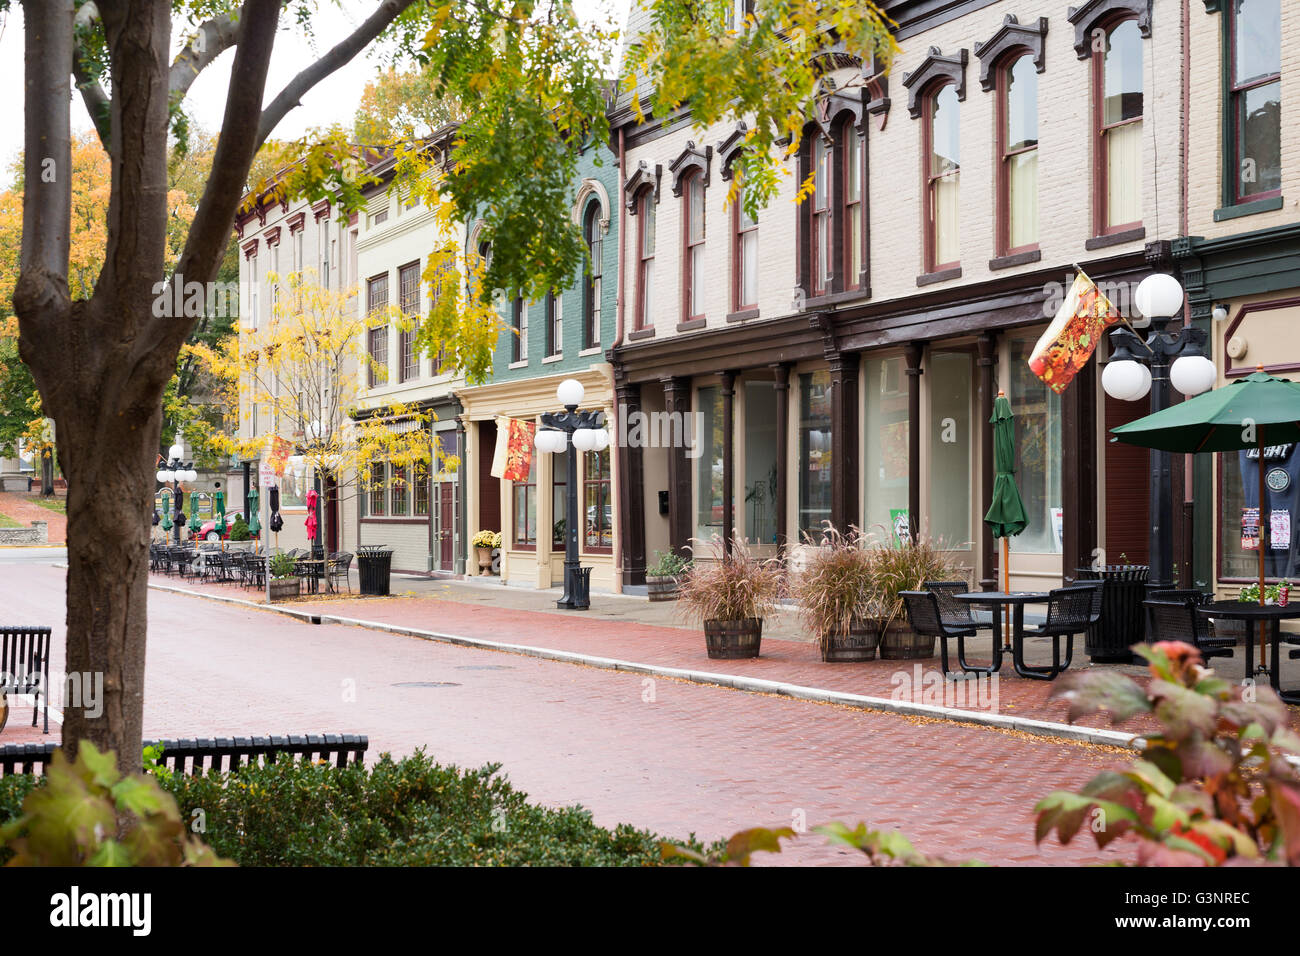 Escena callejera con viejos edificios históricos y tiendas en el centro de la ciudad de Frankfort, Kentucky, EE.UU. Foto de stock